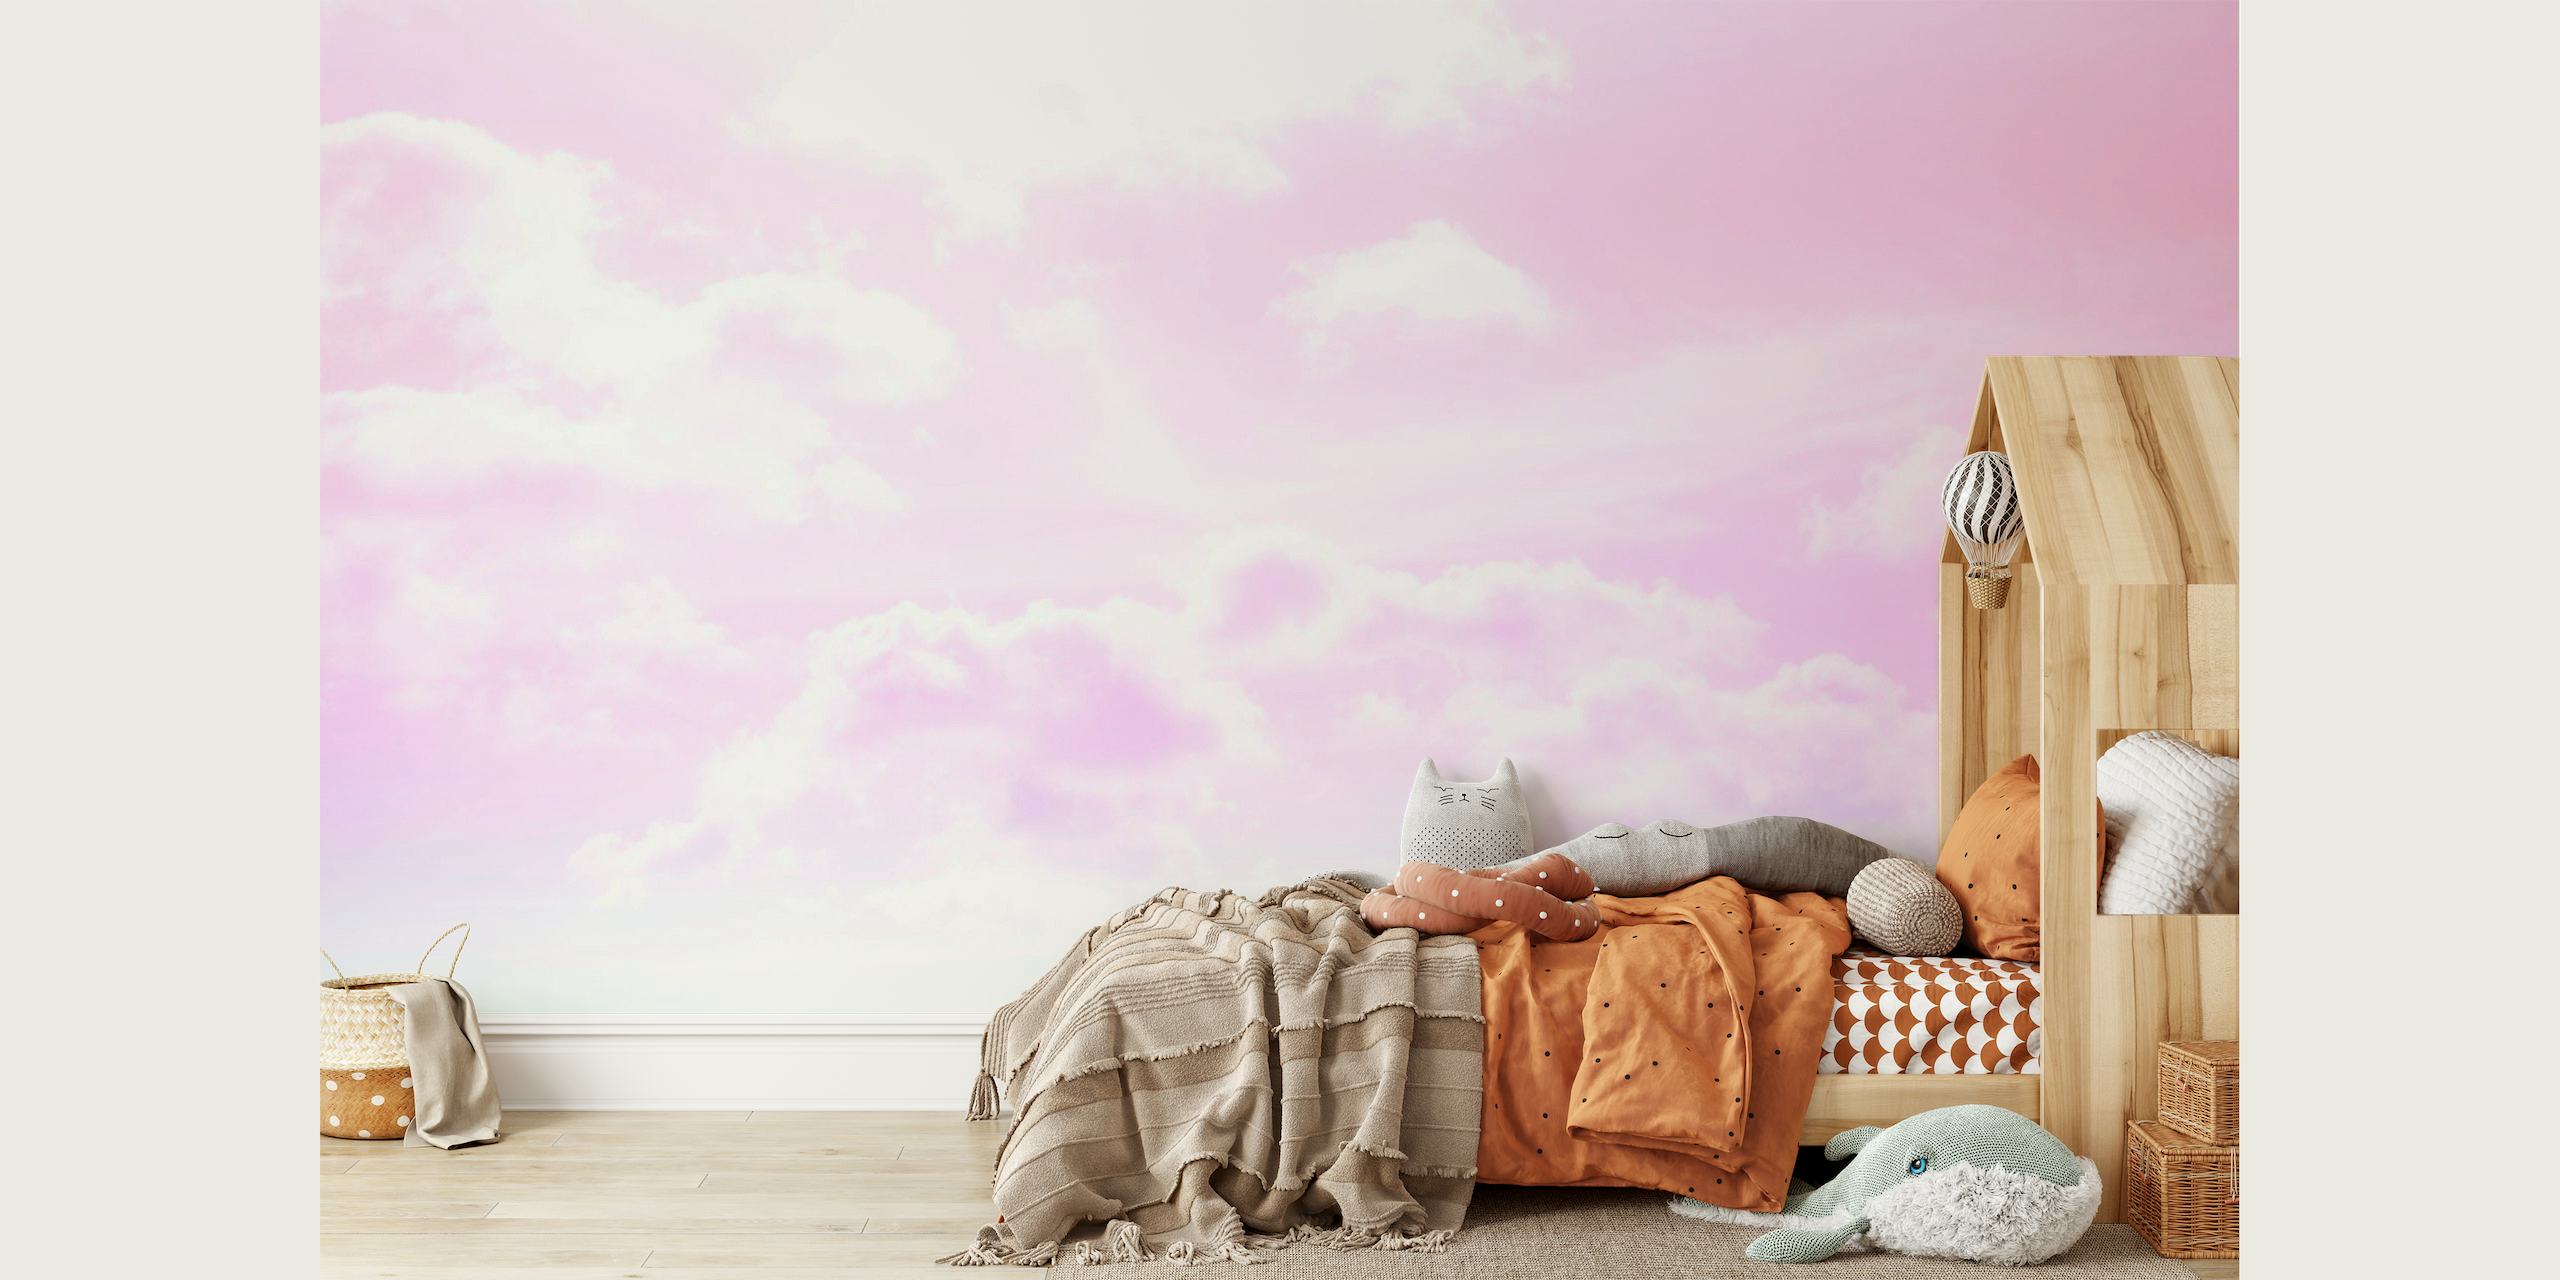 Dreamy Clouds 5 - Pastel Unicorn Colors behang